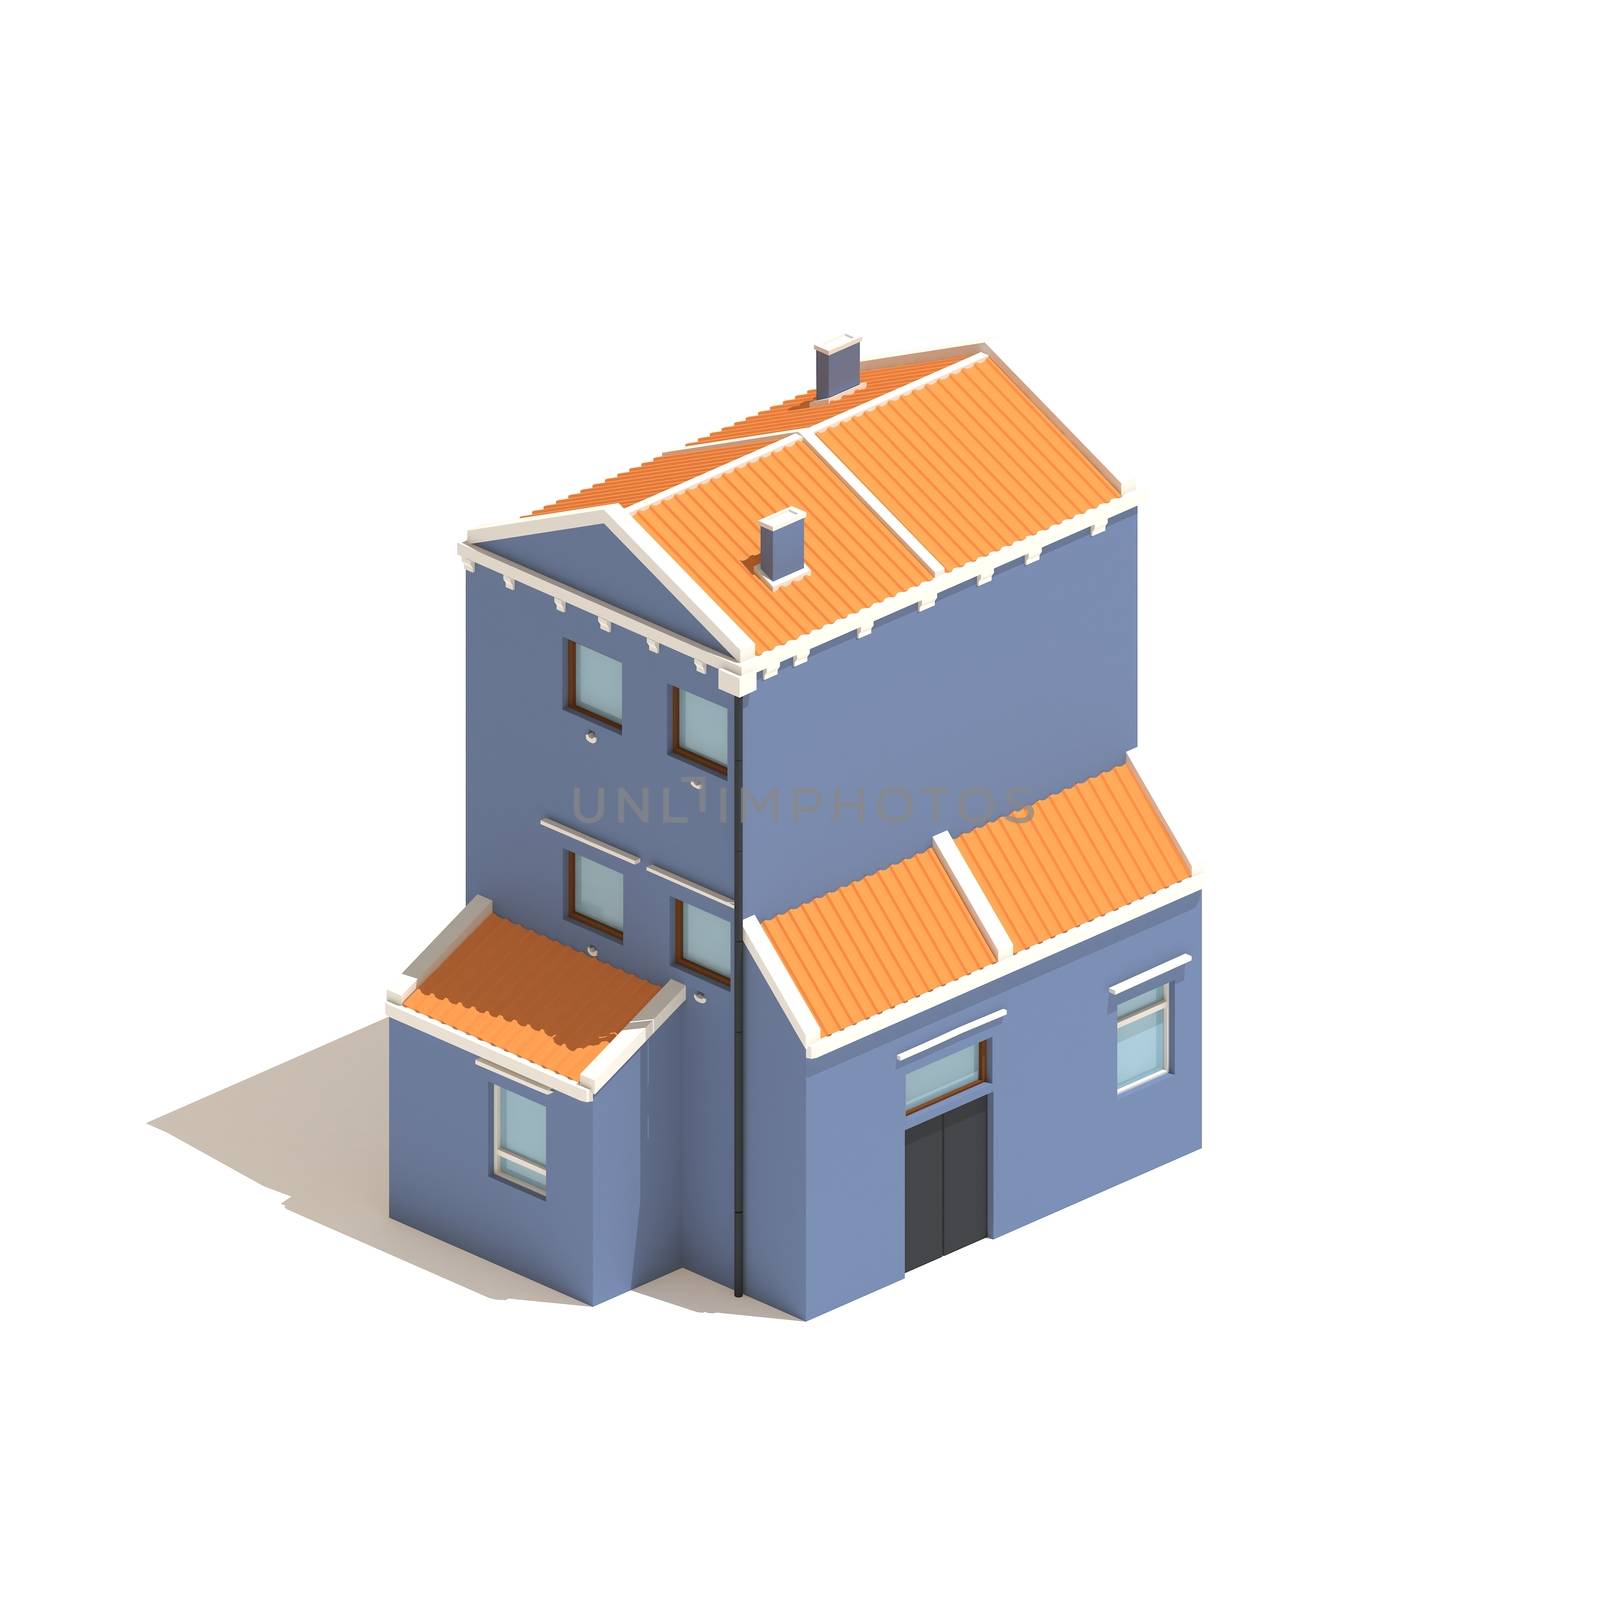 Flat 3d model isometric blue house illustration isolated on white background